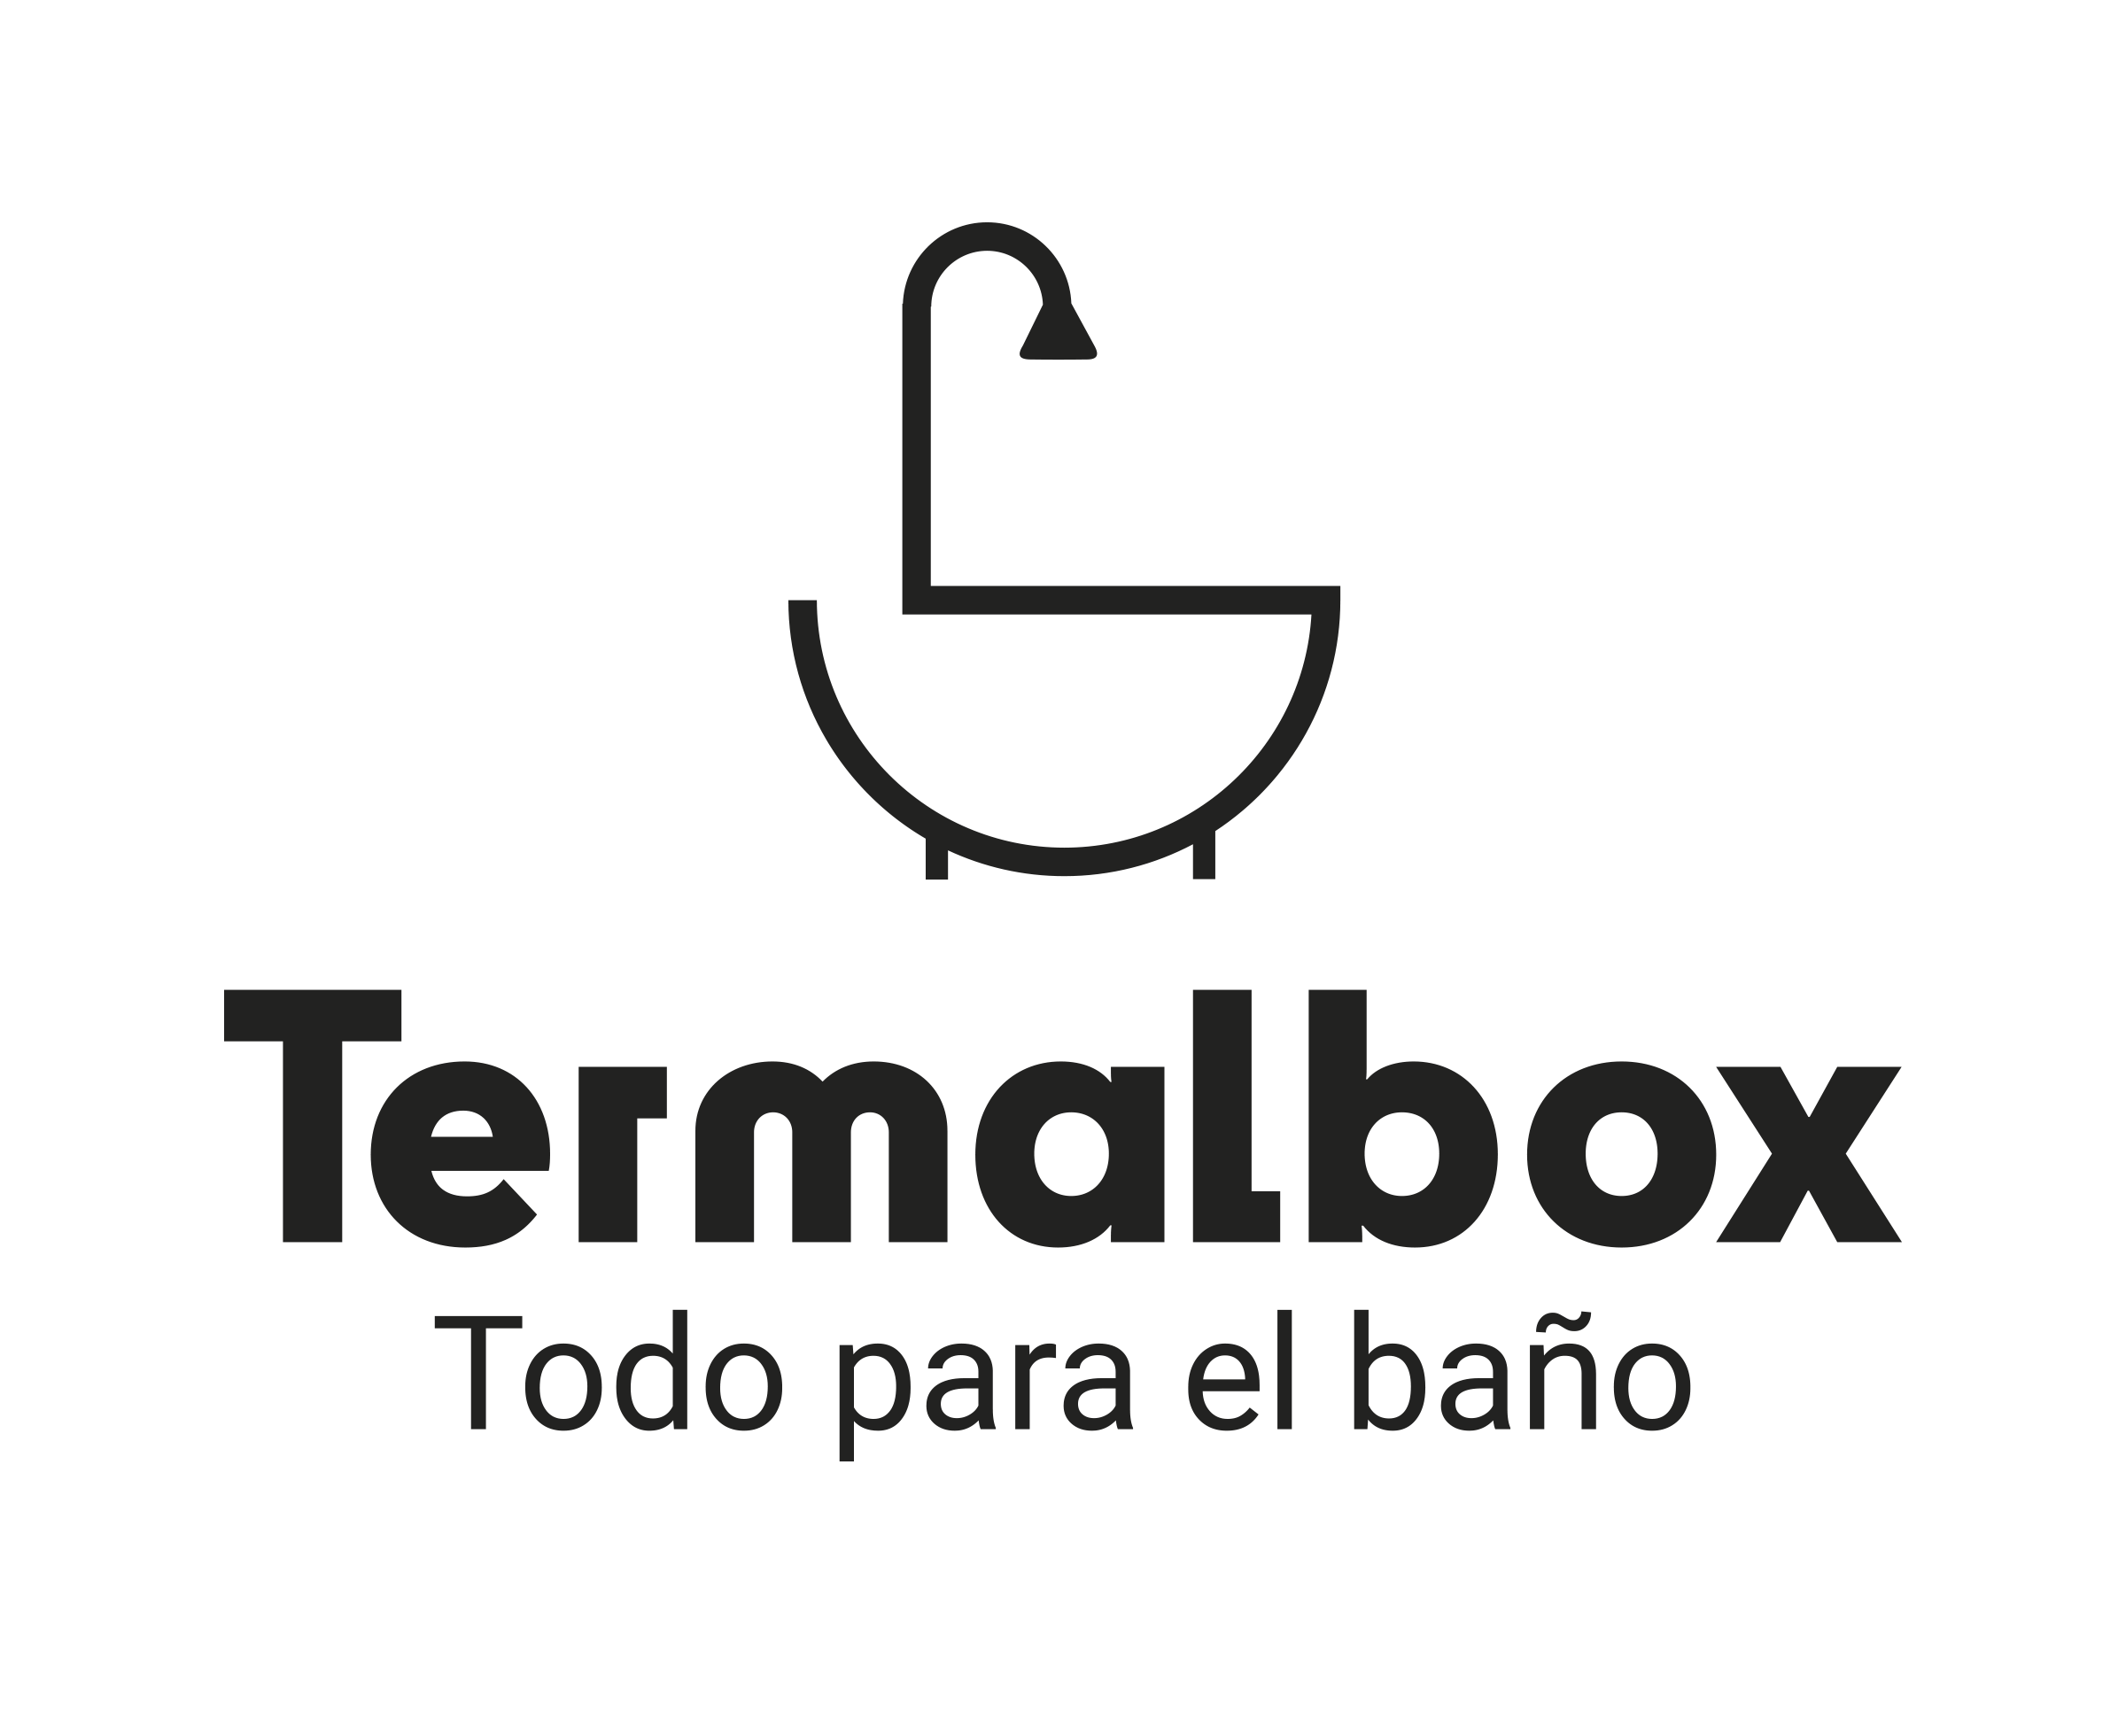 Termalbox